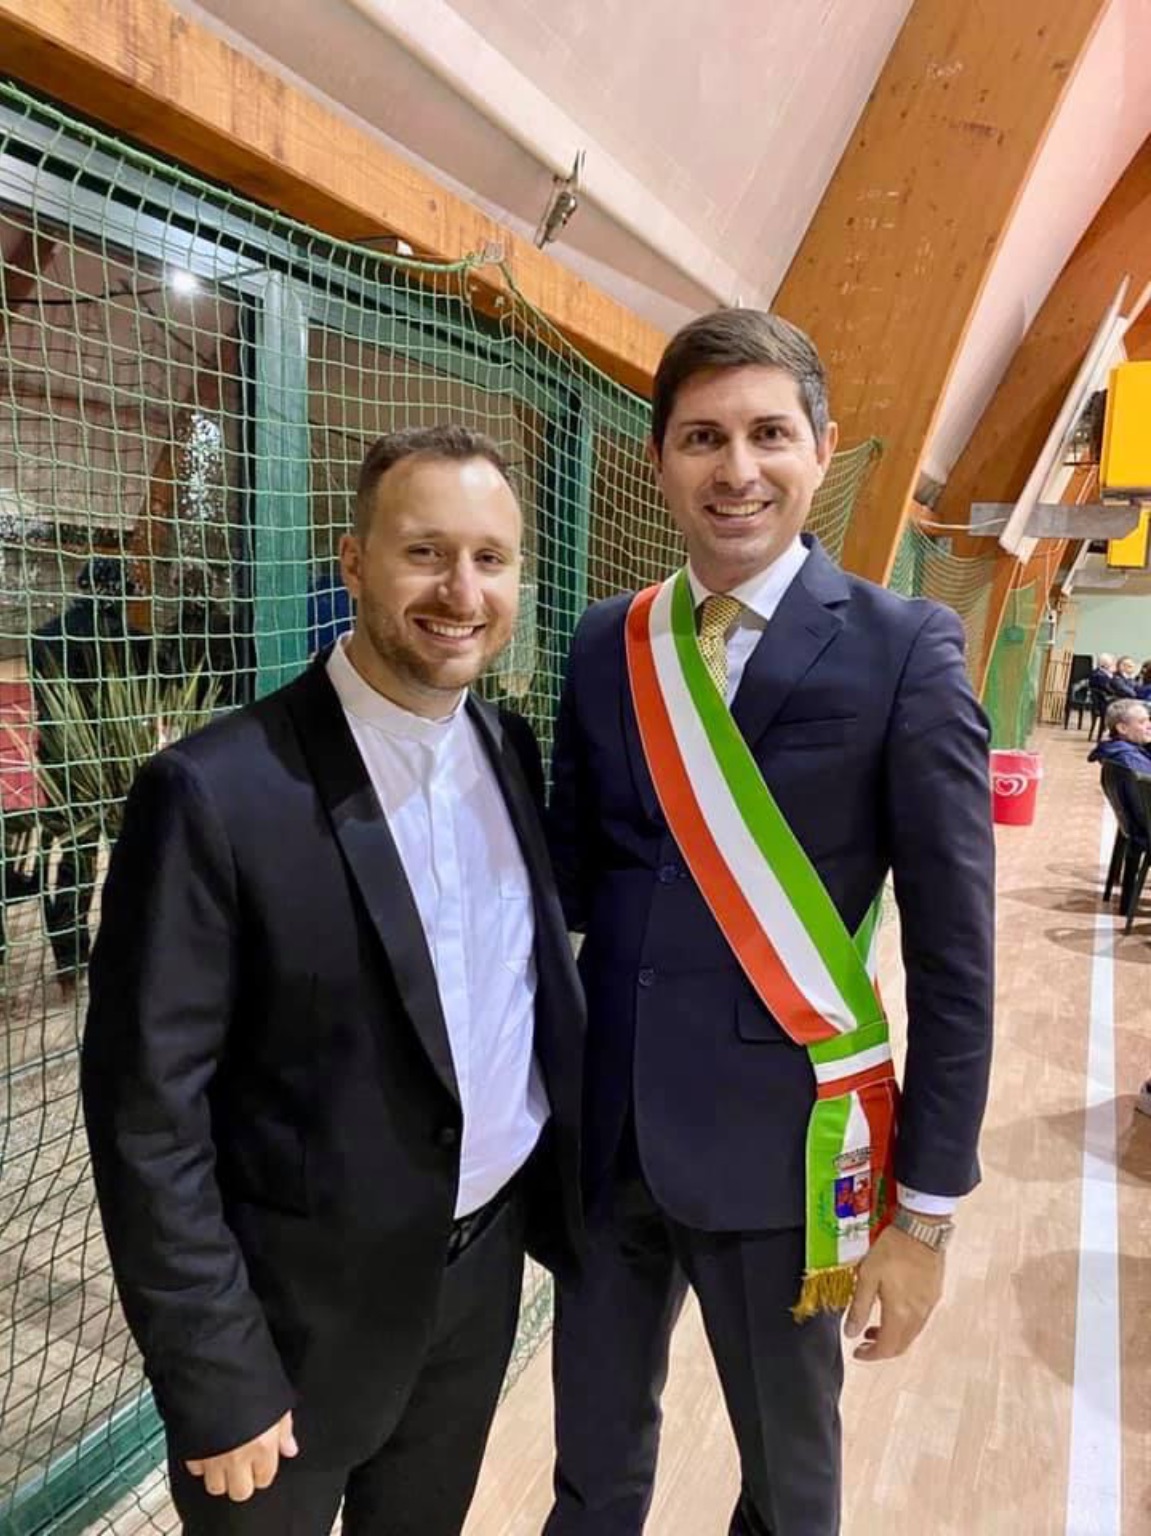 Il PopSindaco d’Italia e Moscazzano Gianluca Savoldi, via Social omaggia don Cristofer nuovo sacerdote cremasco